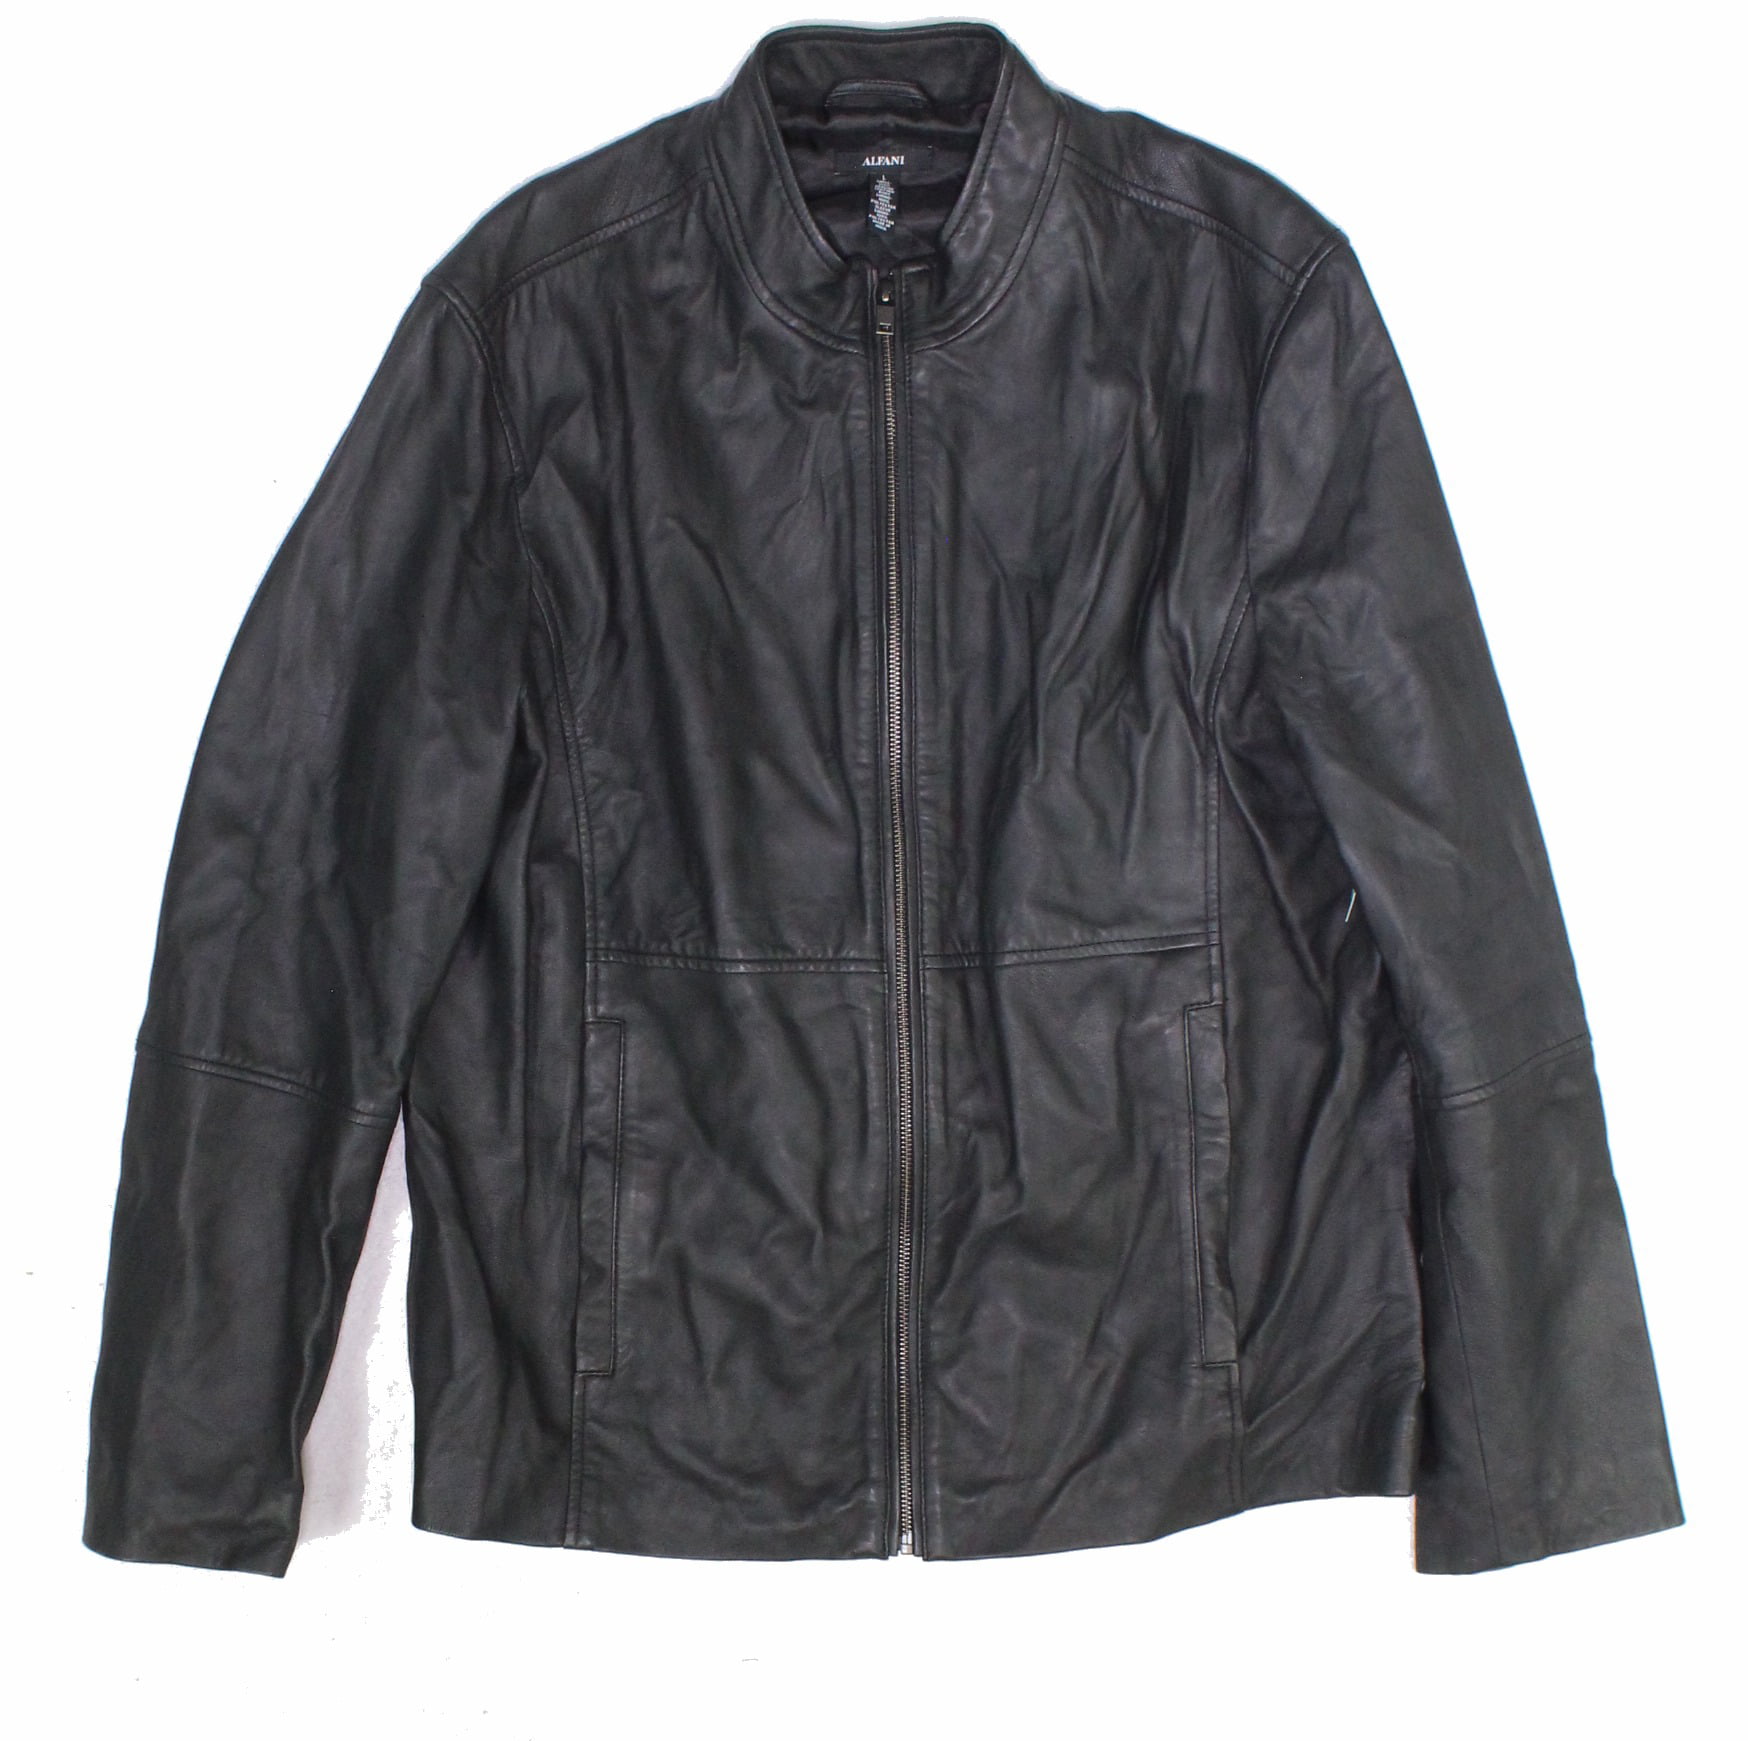 Alfani Mens Full Zip Leather Jacket - Walmart.com - Walmart.com